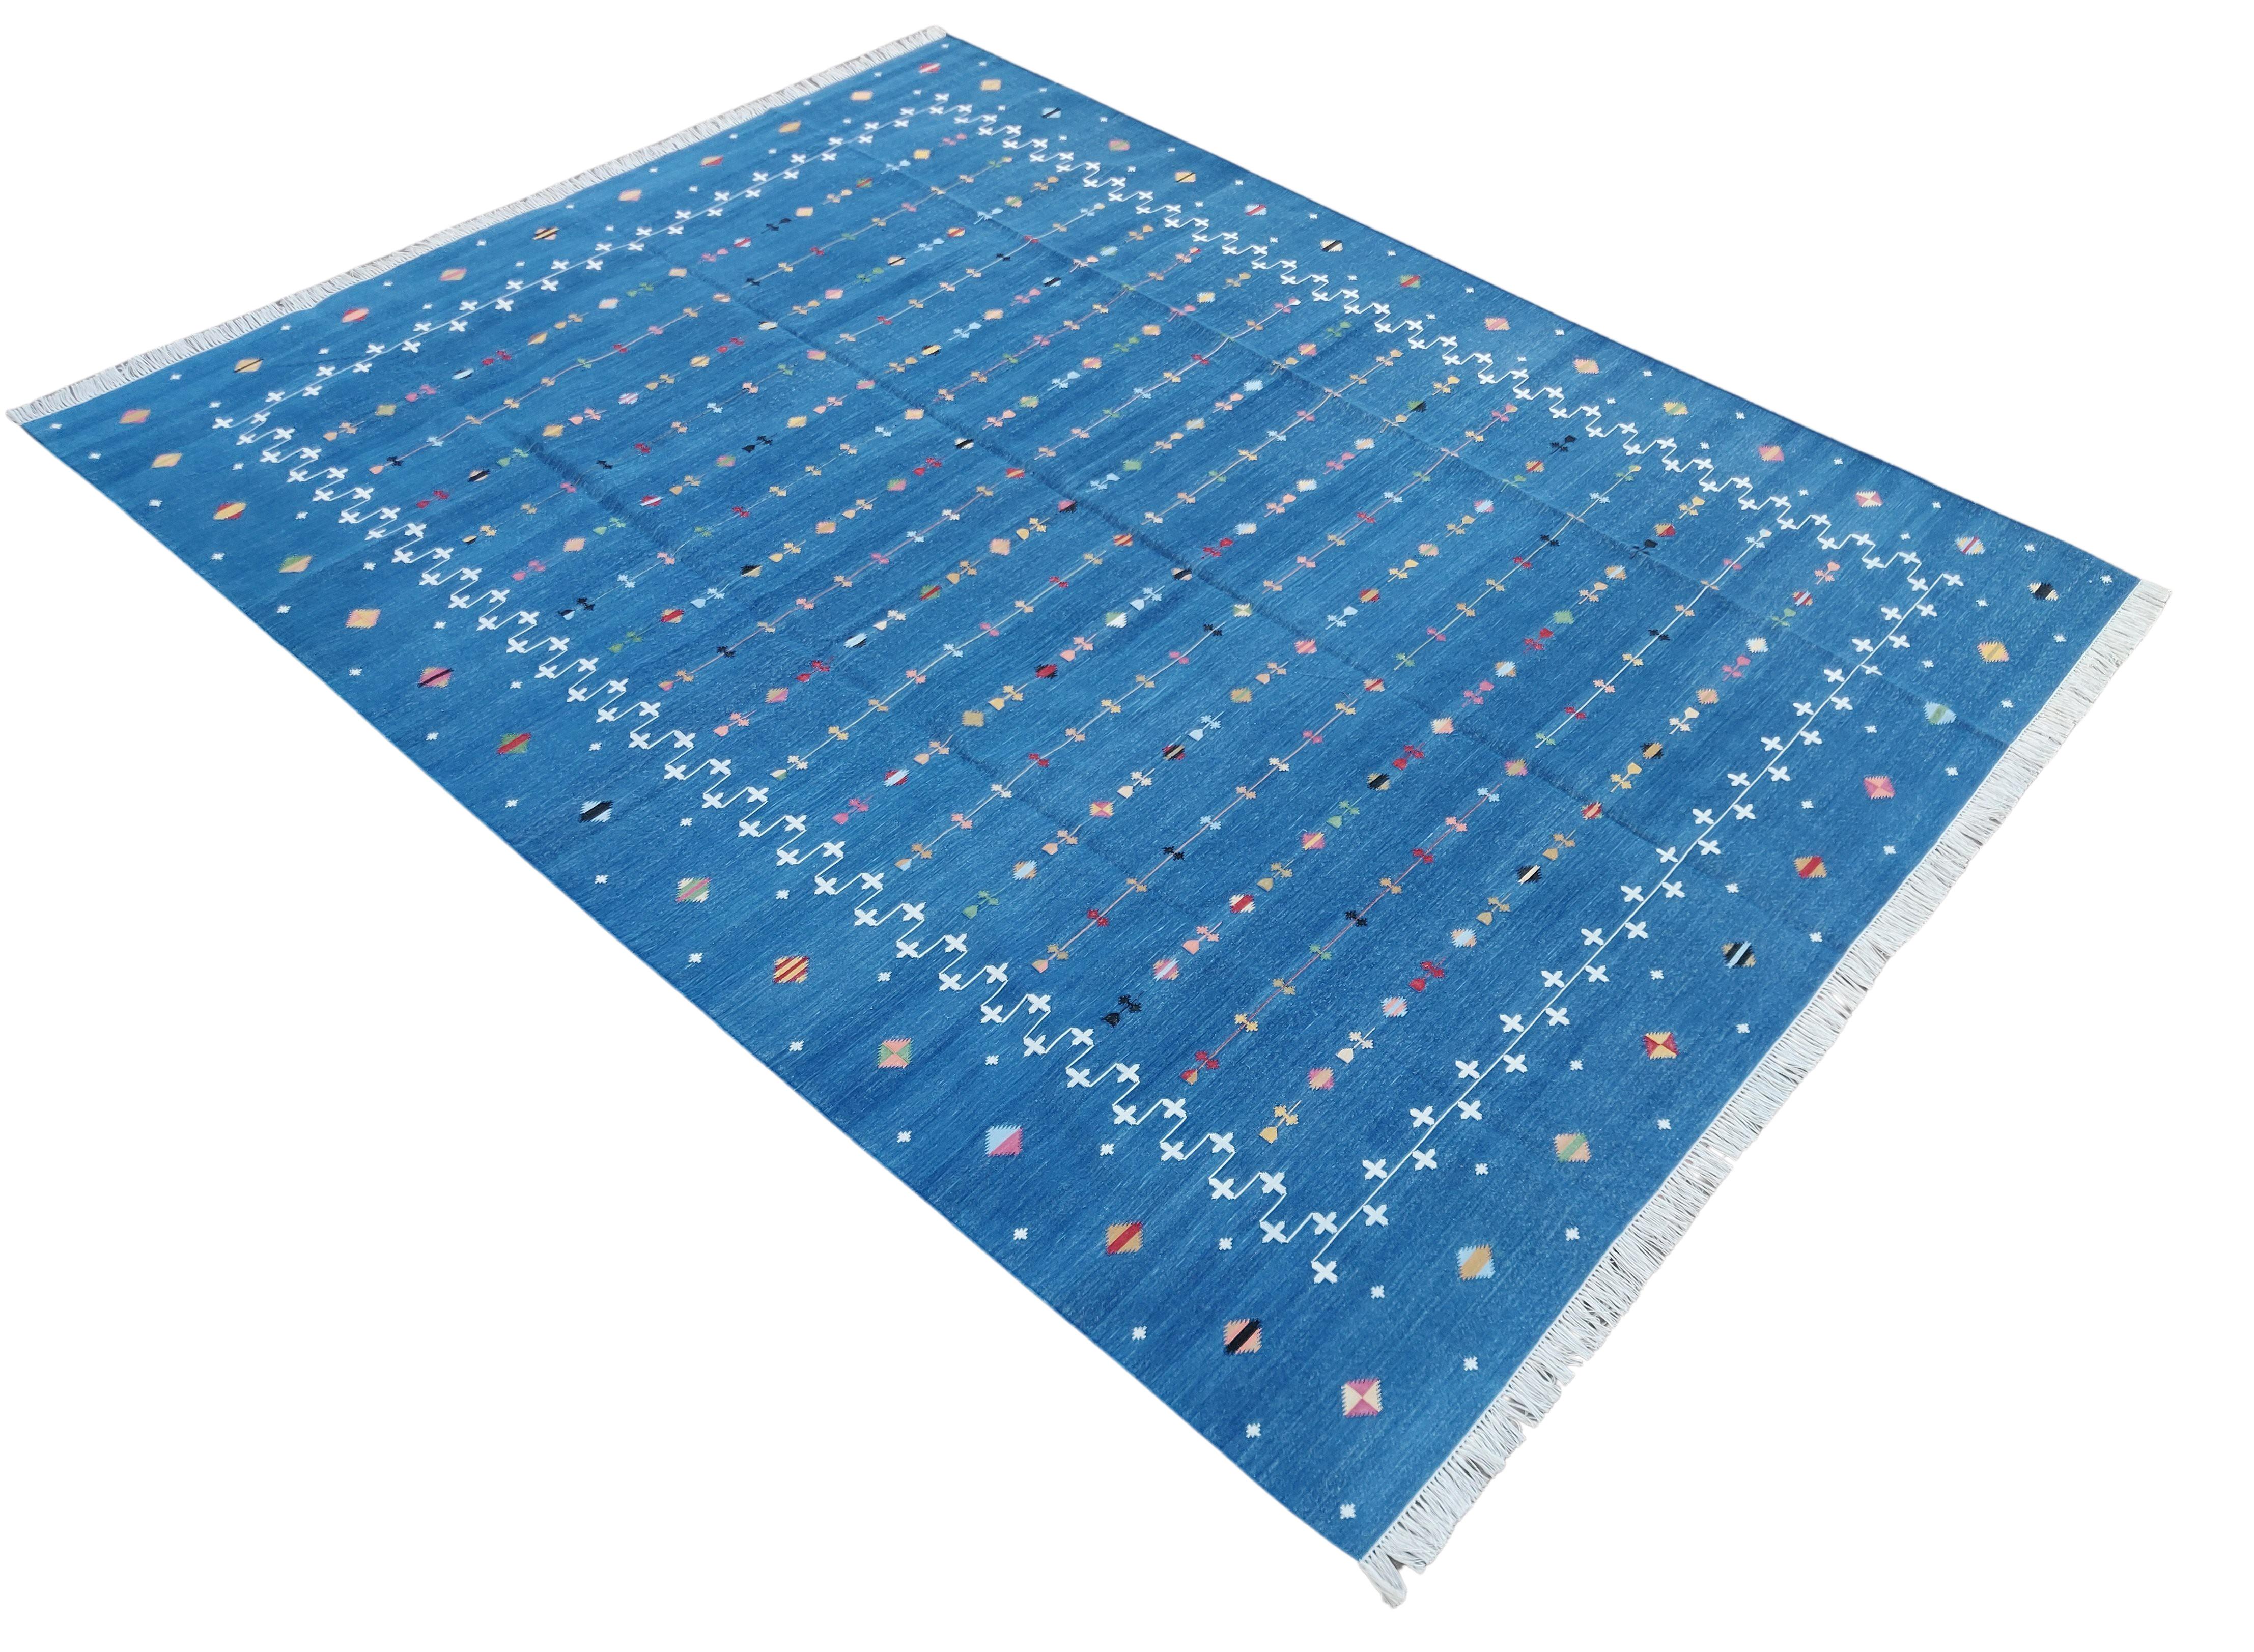 Baumwolle pflanzlich gefärbt Indigo Blau Shooting Star Teppich-8'x10'
Diese speziellen flachgewebten Dhurries werden aus 15-fachem Garn aus 100% Baumwolle handgewebt. Aufgrund der speziellen Fertigungstechniken, die zur Herstellung unserer Teppiche